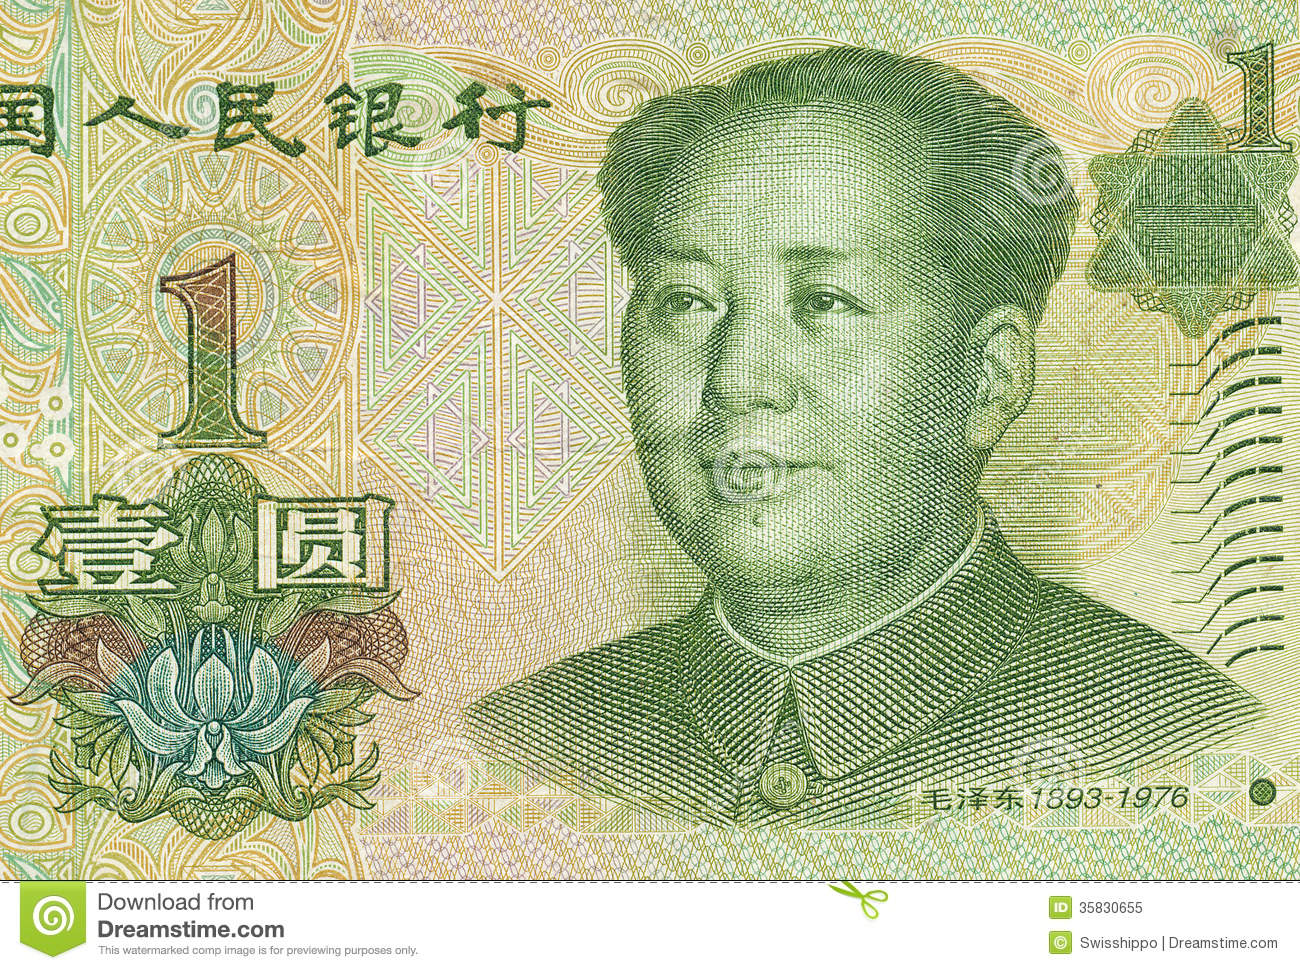 Chinesischer RenminbiChinese yuan